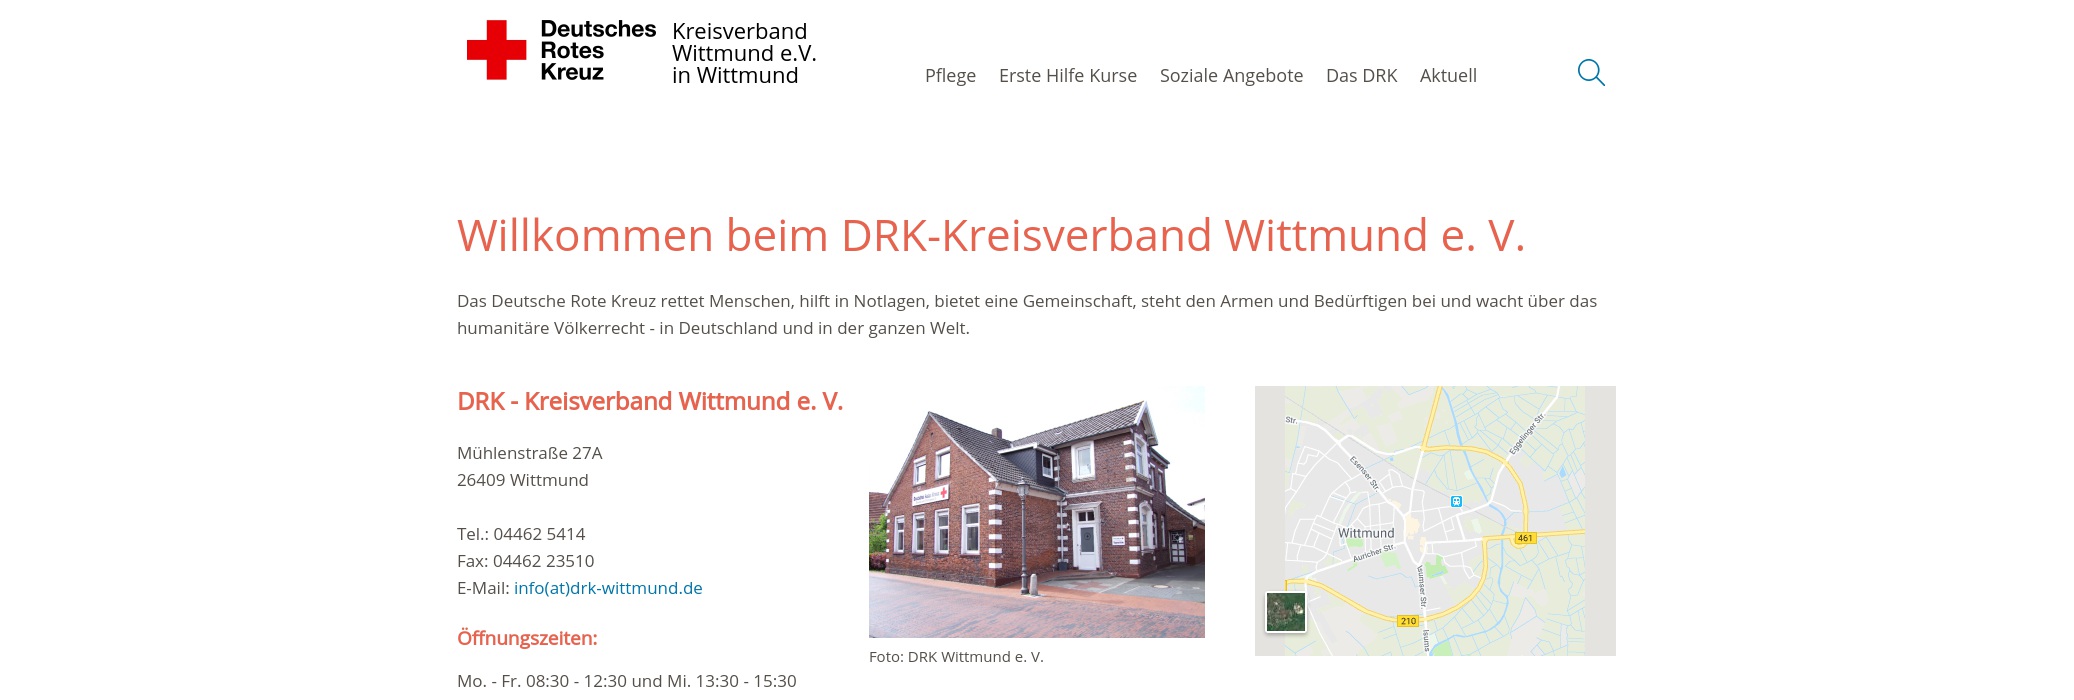 DRK-KV Wittmund e. V.